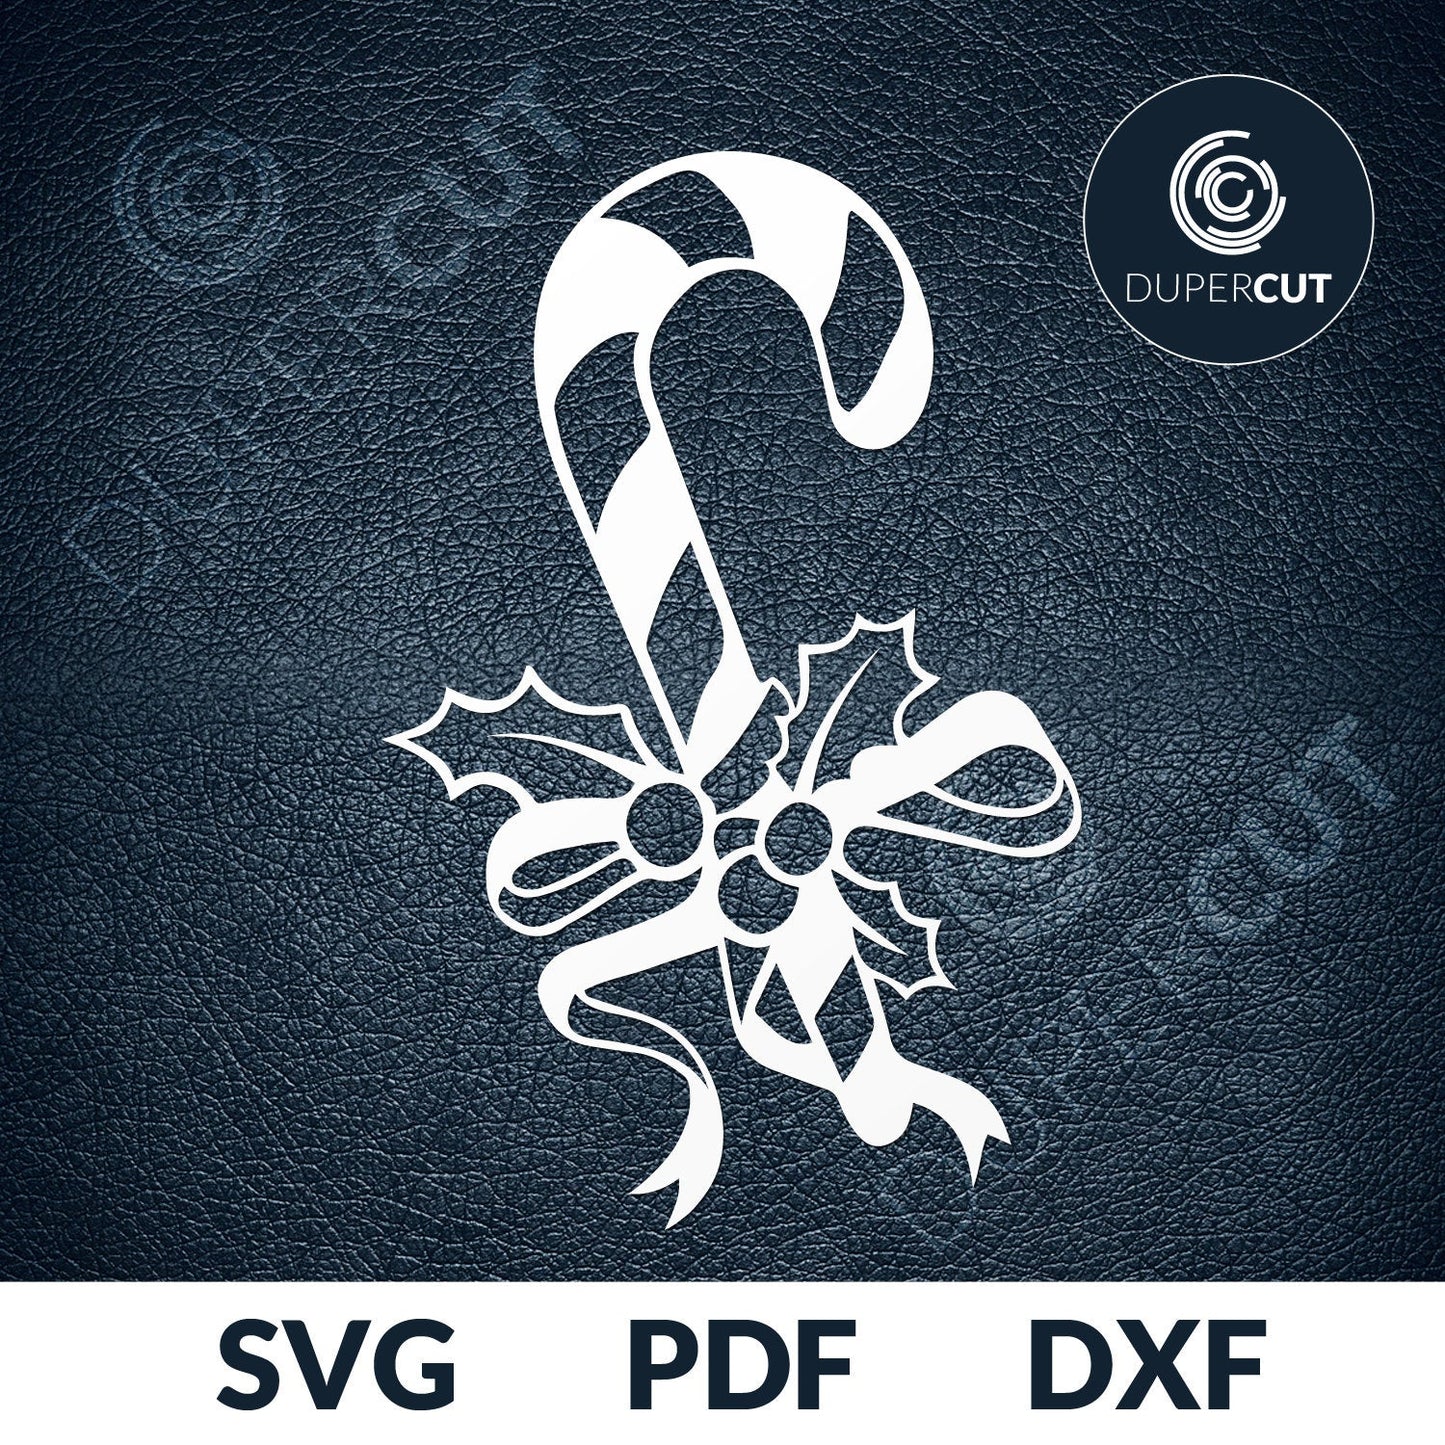 2 Designs - SNOWMAN & CANDYCANE - SVG / PDF / DXF by  DuperCut.